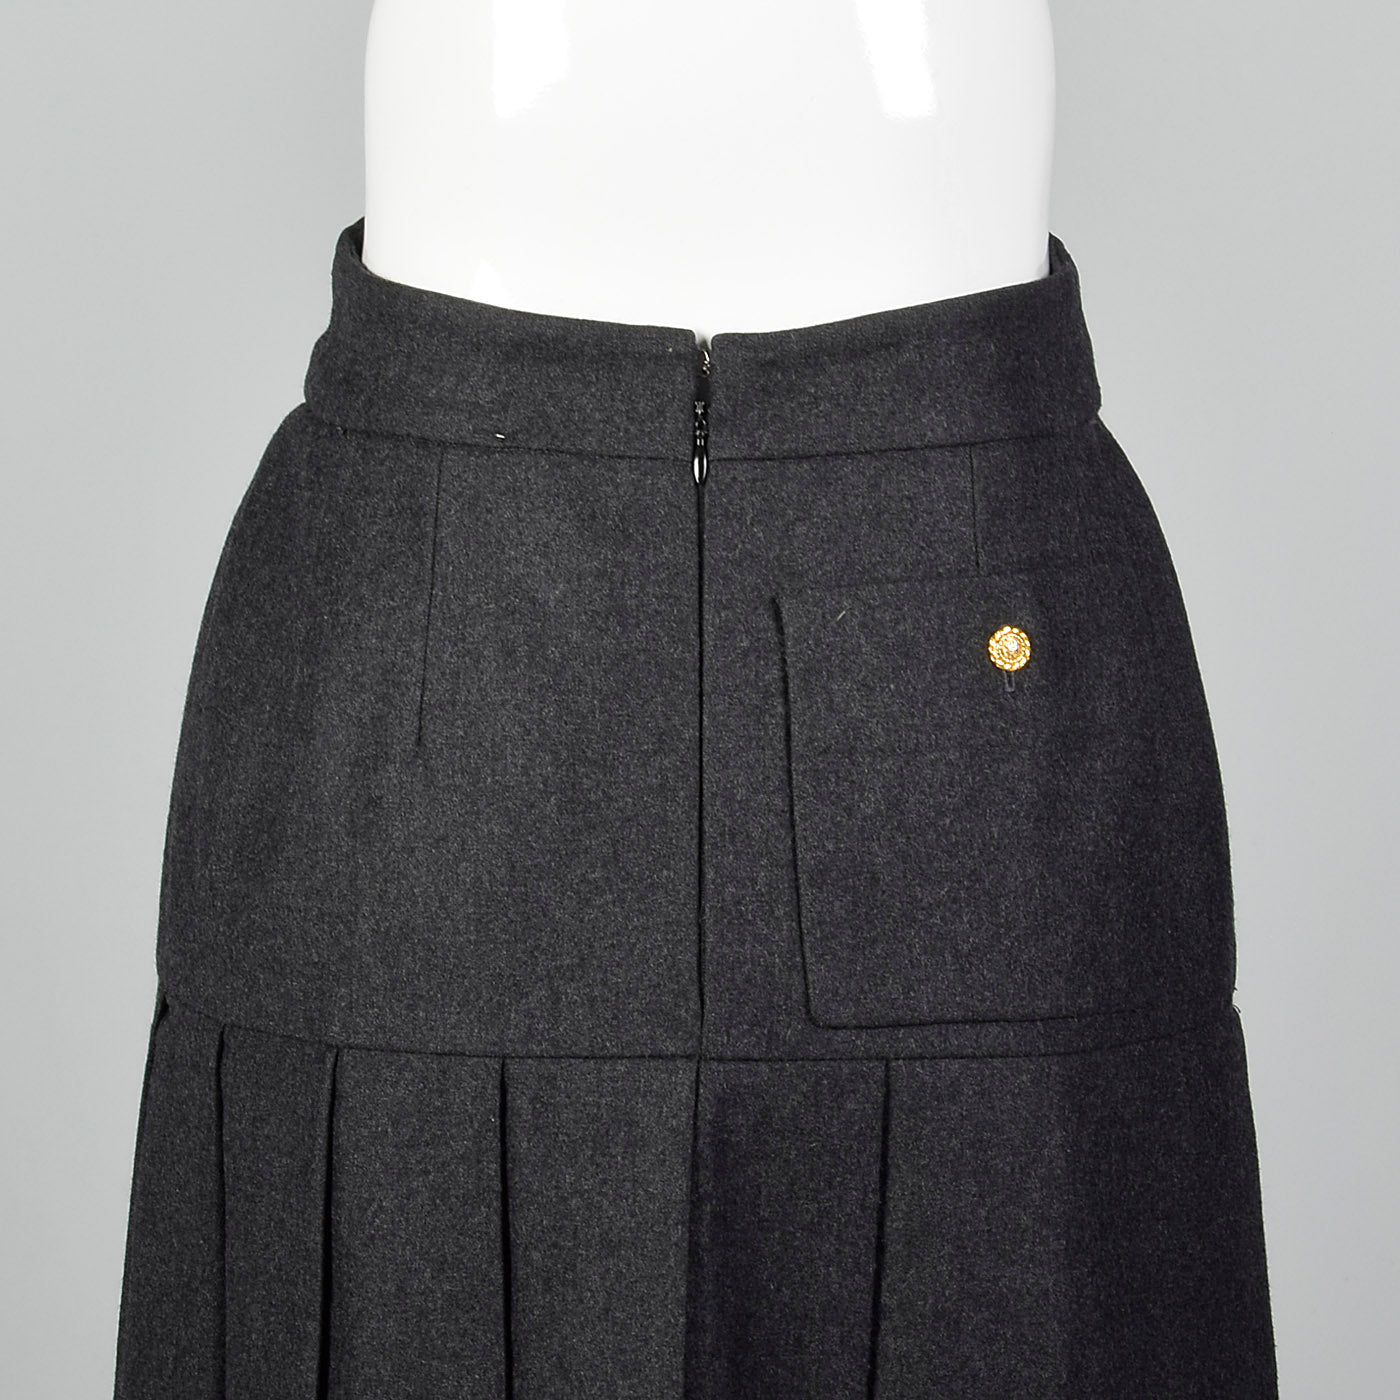 Chanel Boutique 1990's Vintage Mini Skirt Suit Set